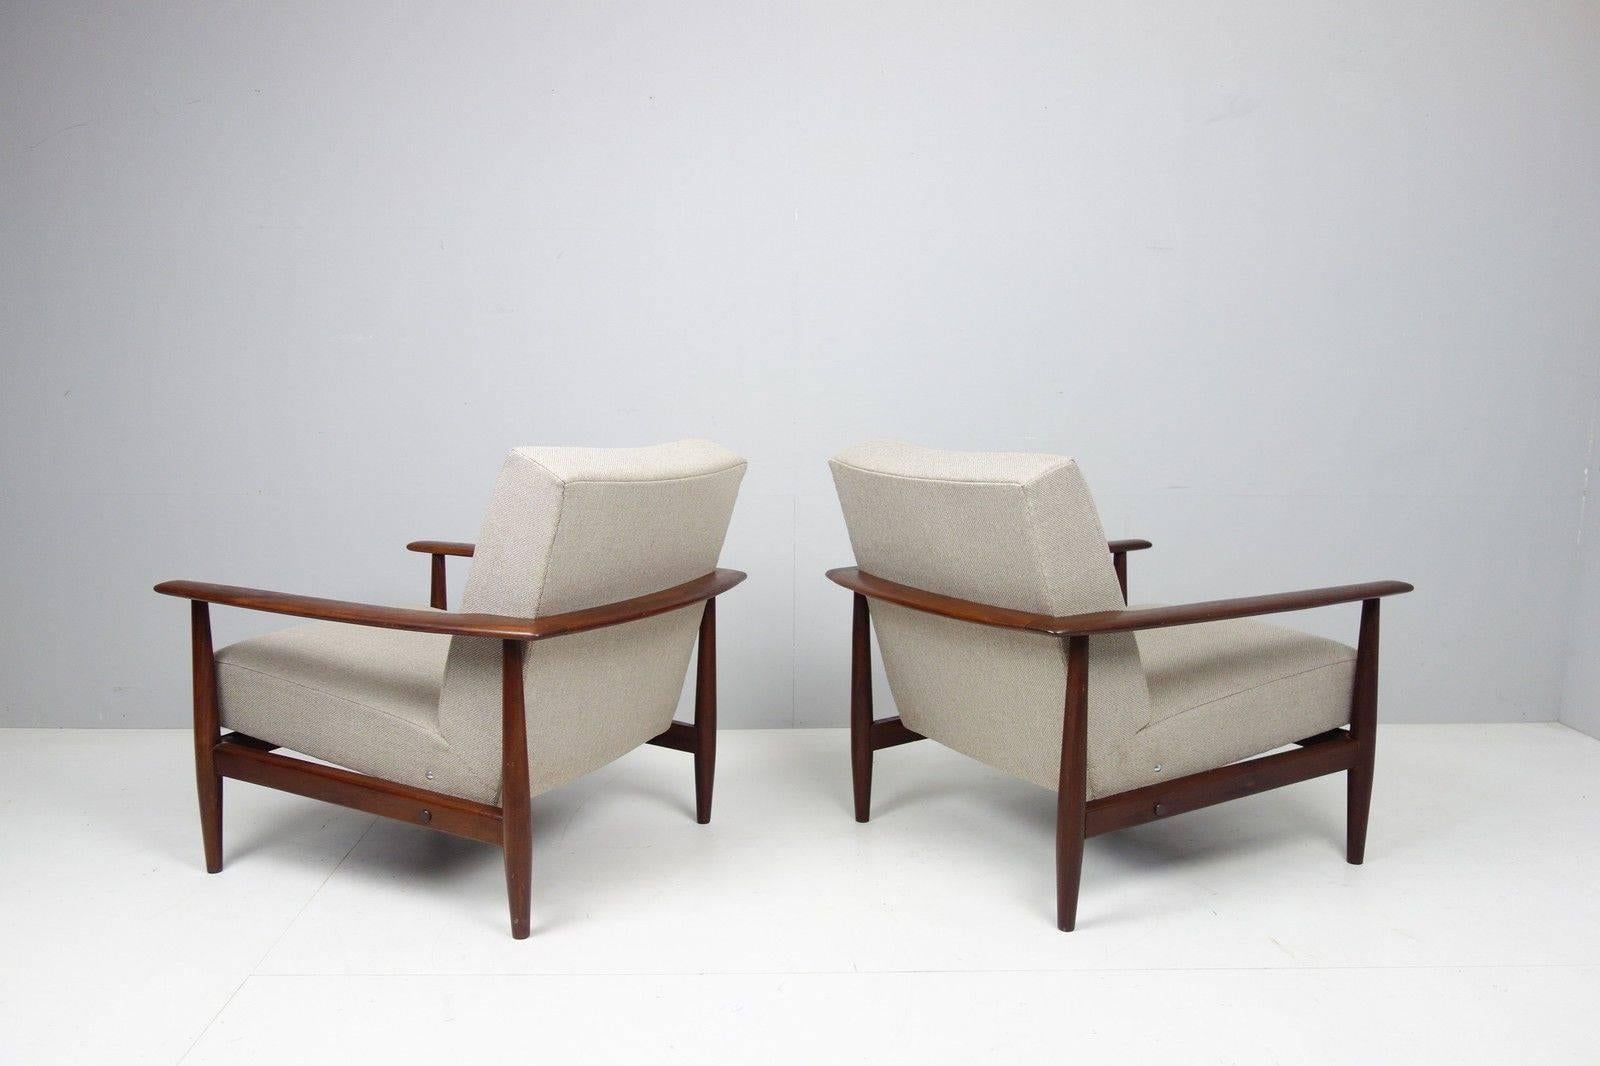 Nice pair of Scandinavian teak armchairs, 1950s-1960s,
Denmark, 
Reupholstered in grey cotton.